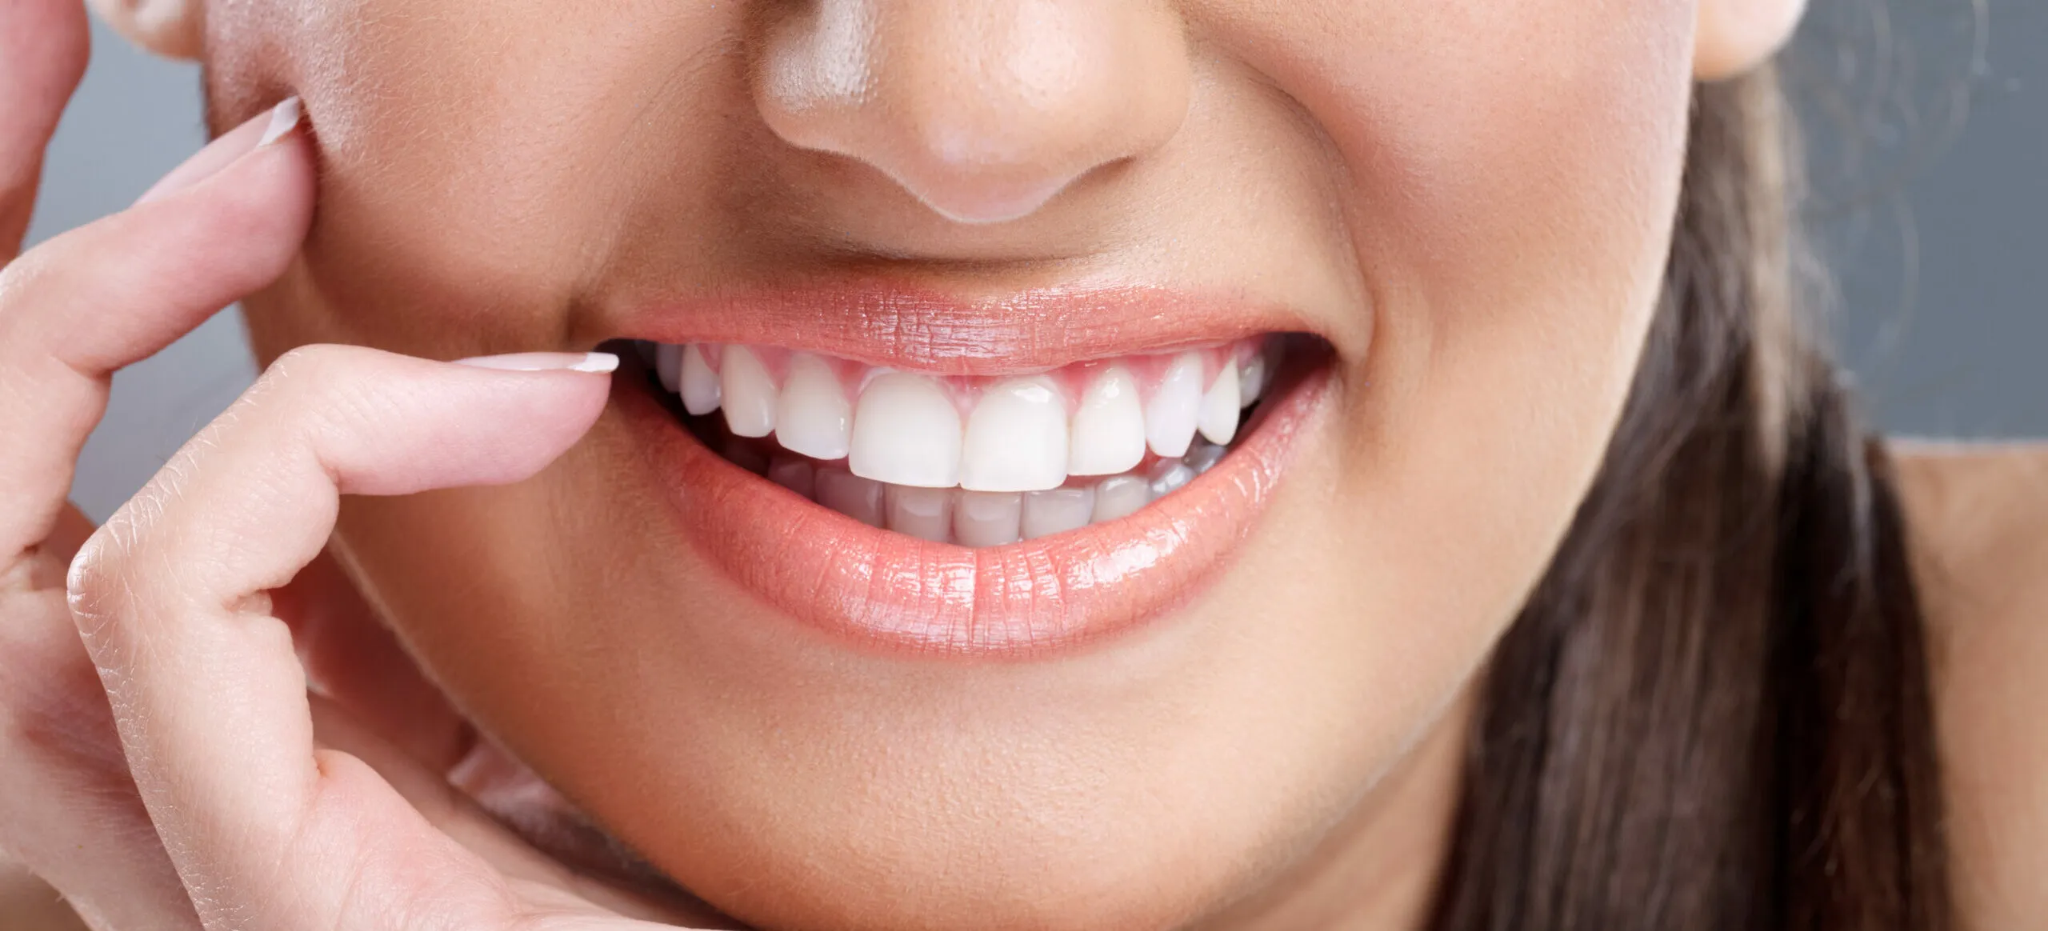 Răng là một bộ phận cực kỳ quan trọng của cơ thể con người